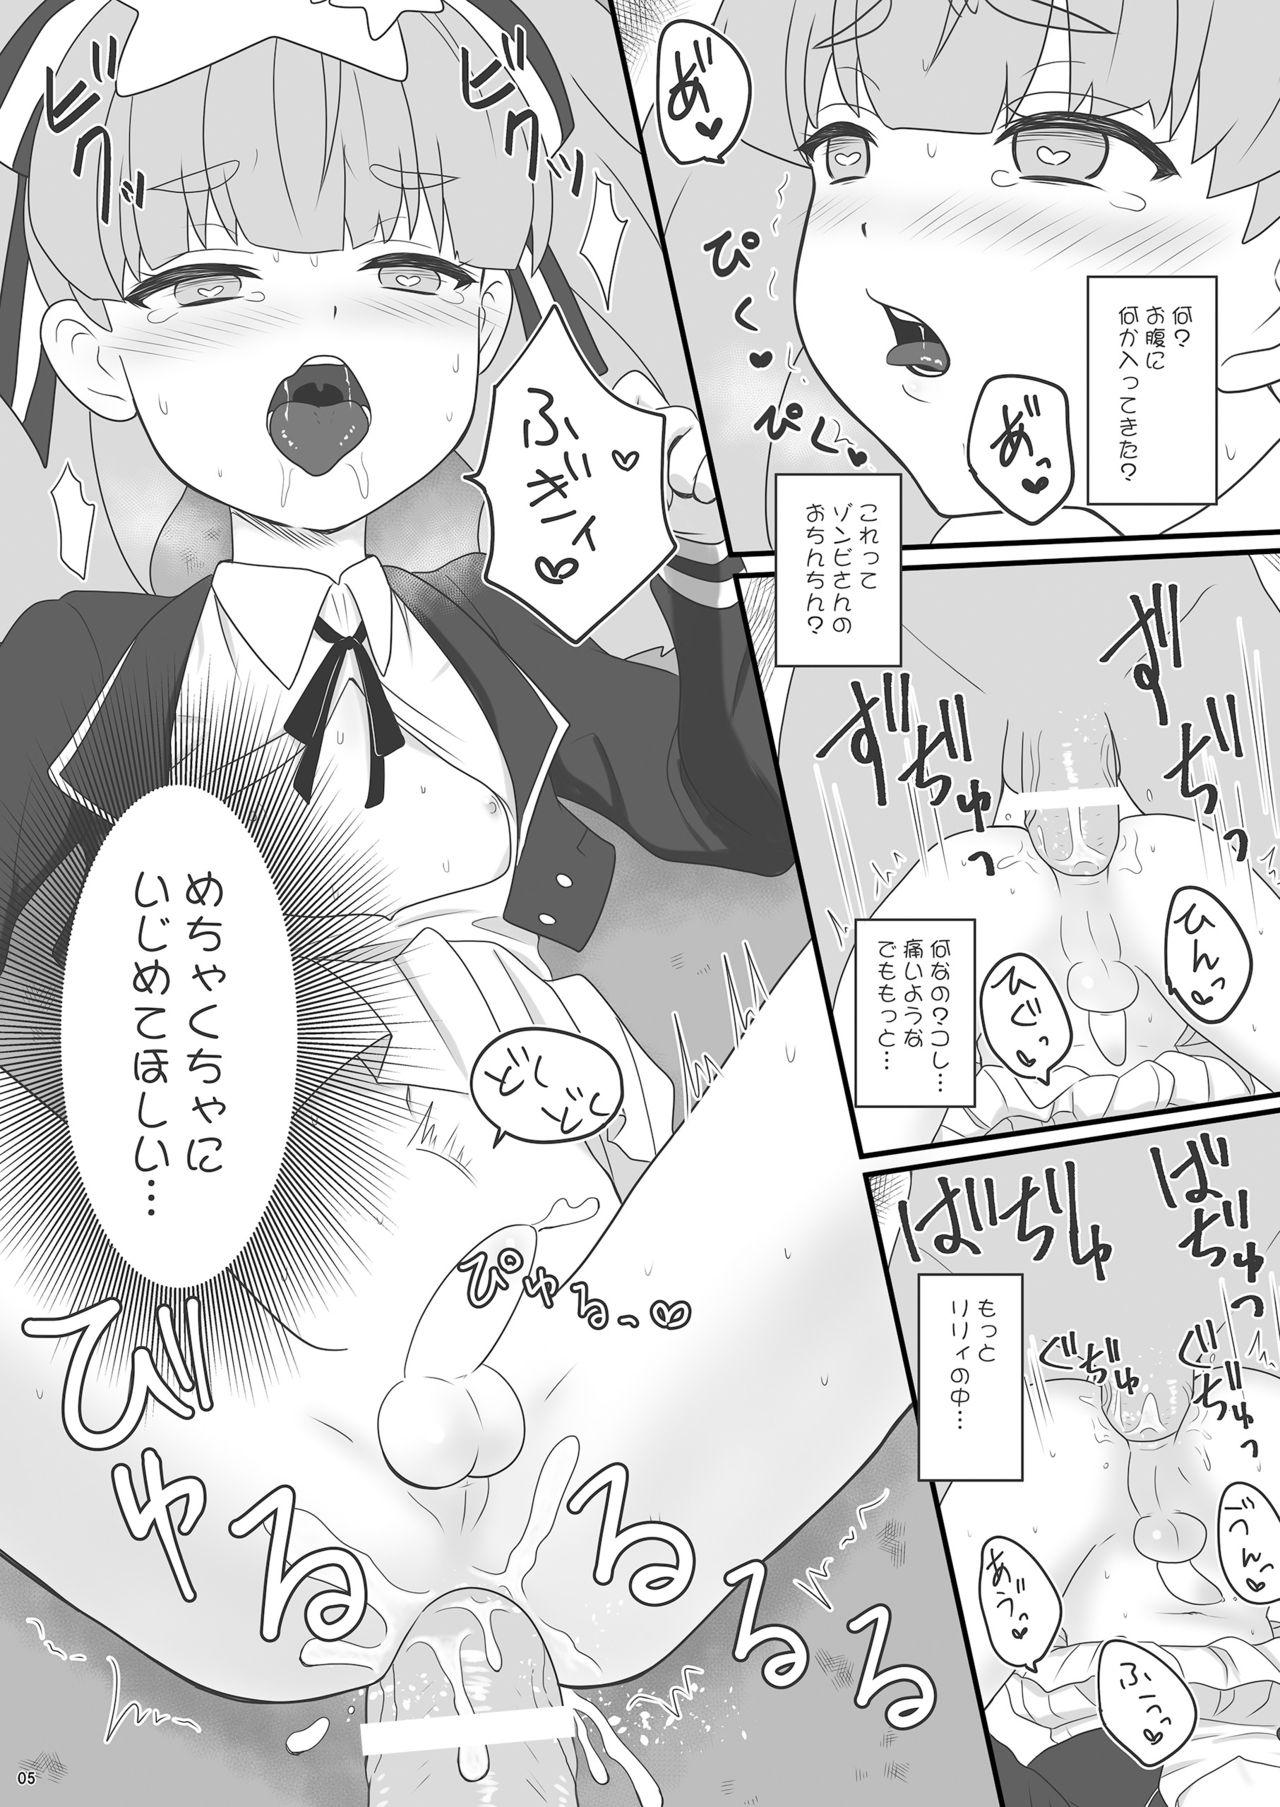 Young Zonsagariryi-chan ga zonbi ni tane tsuke sa reru manga - Zombie land saga Euro Porn - Page 5